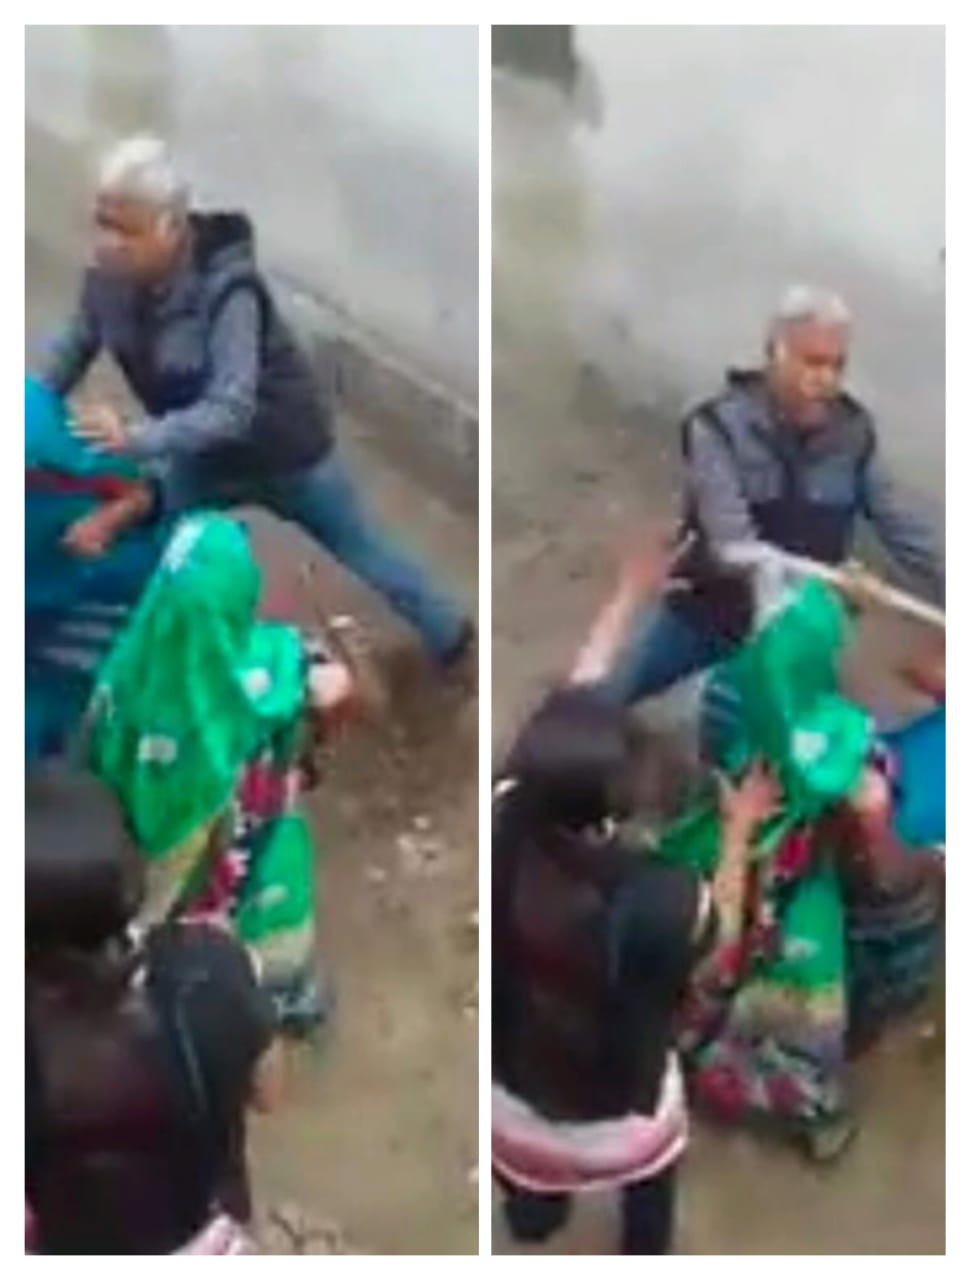 मिर्जापुर के चिल्ह थाना क्षेत्र में नाली बनाने के विवाद में बुजुर्ग महिलाओं पर हुए अत्याचार का वीडियो हुए वायरल।